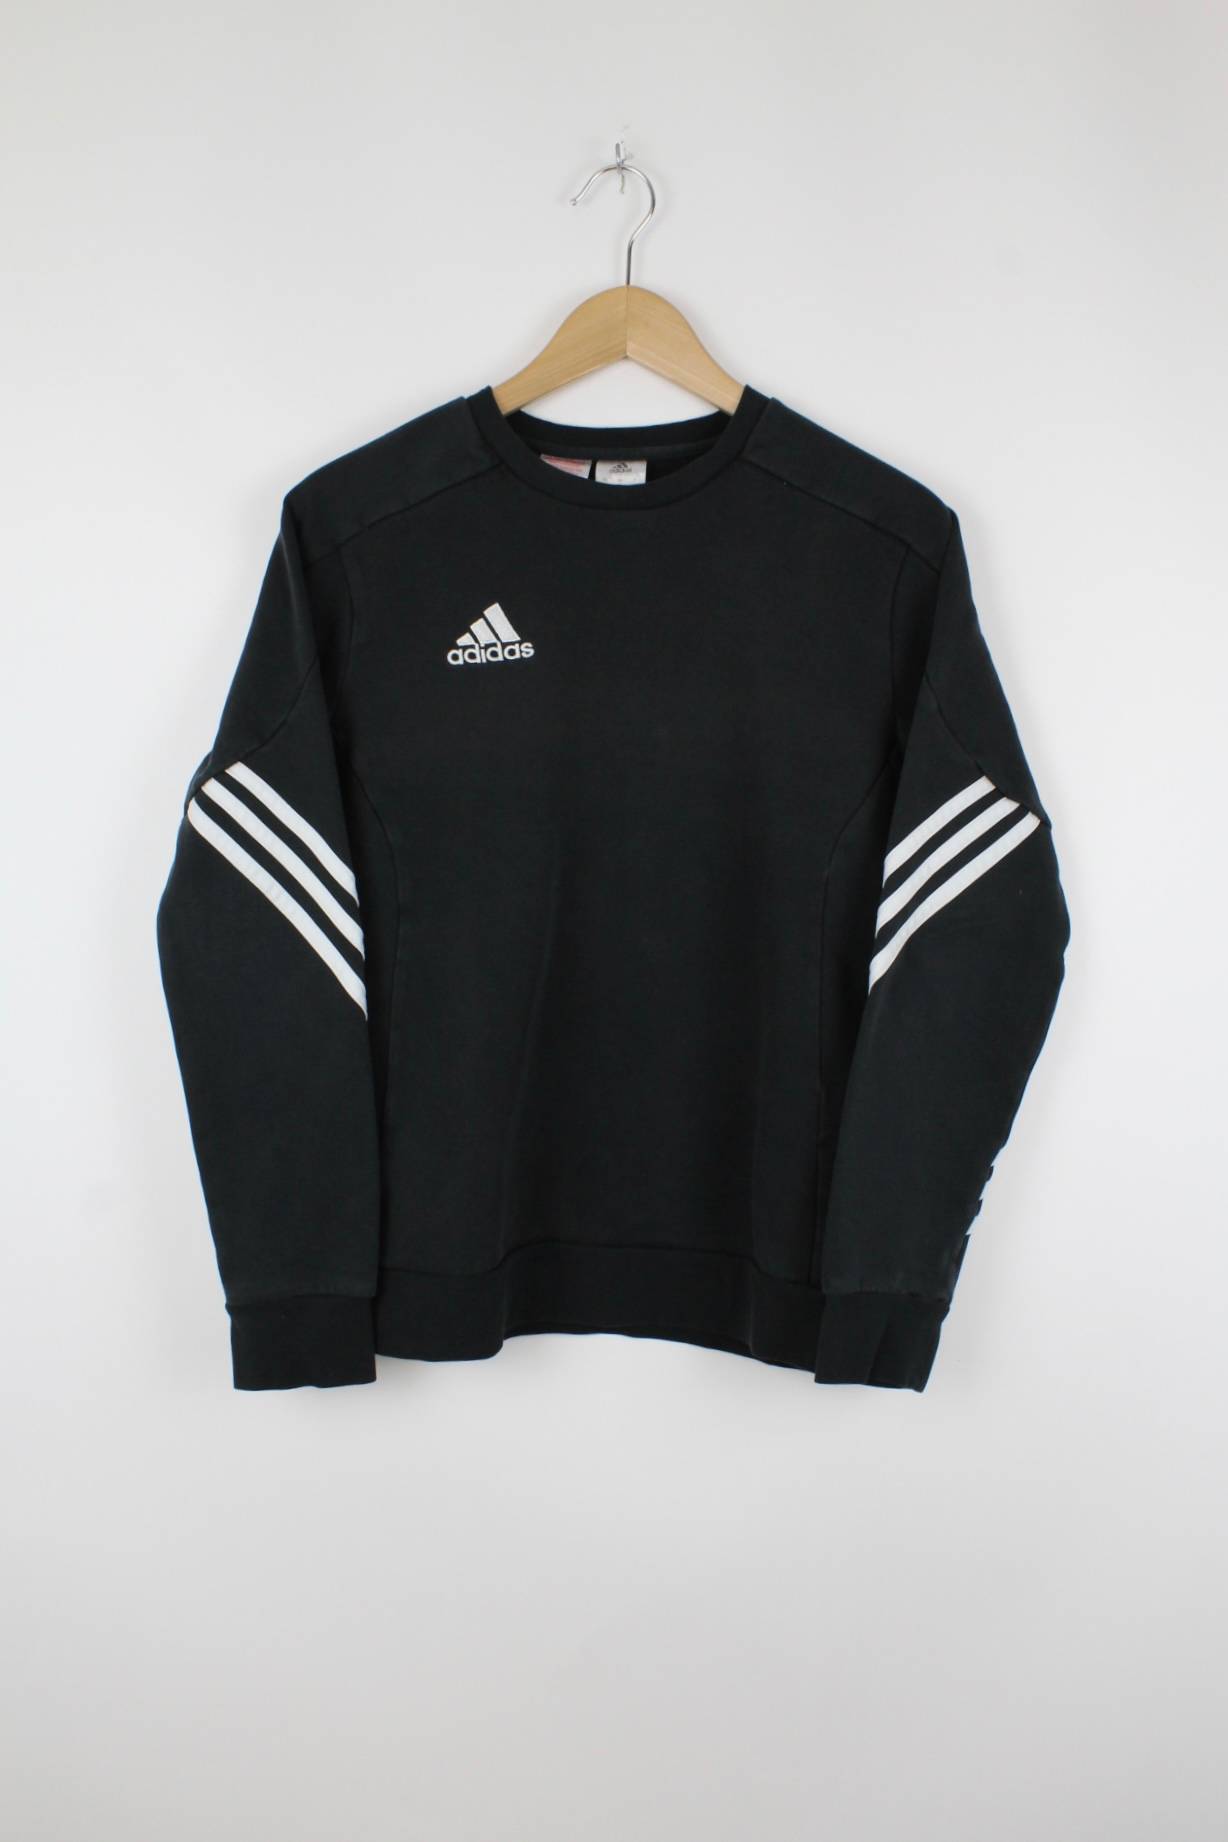 Vintage Adidas Sweater Schwarz - S